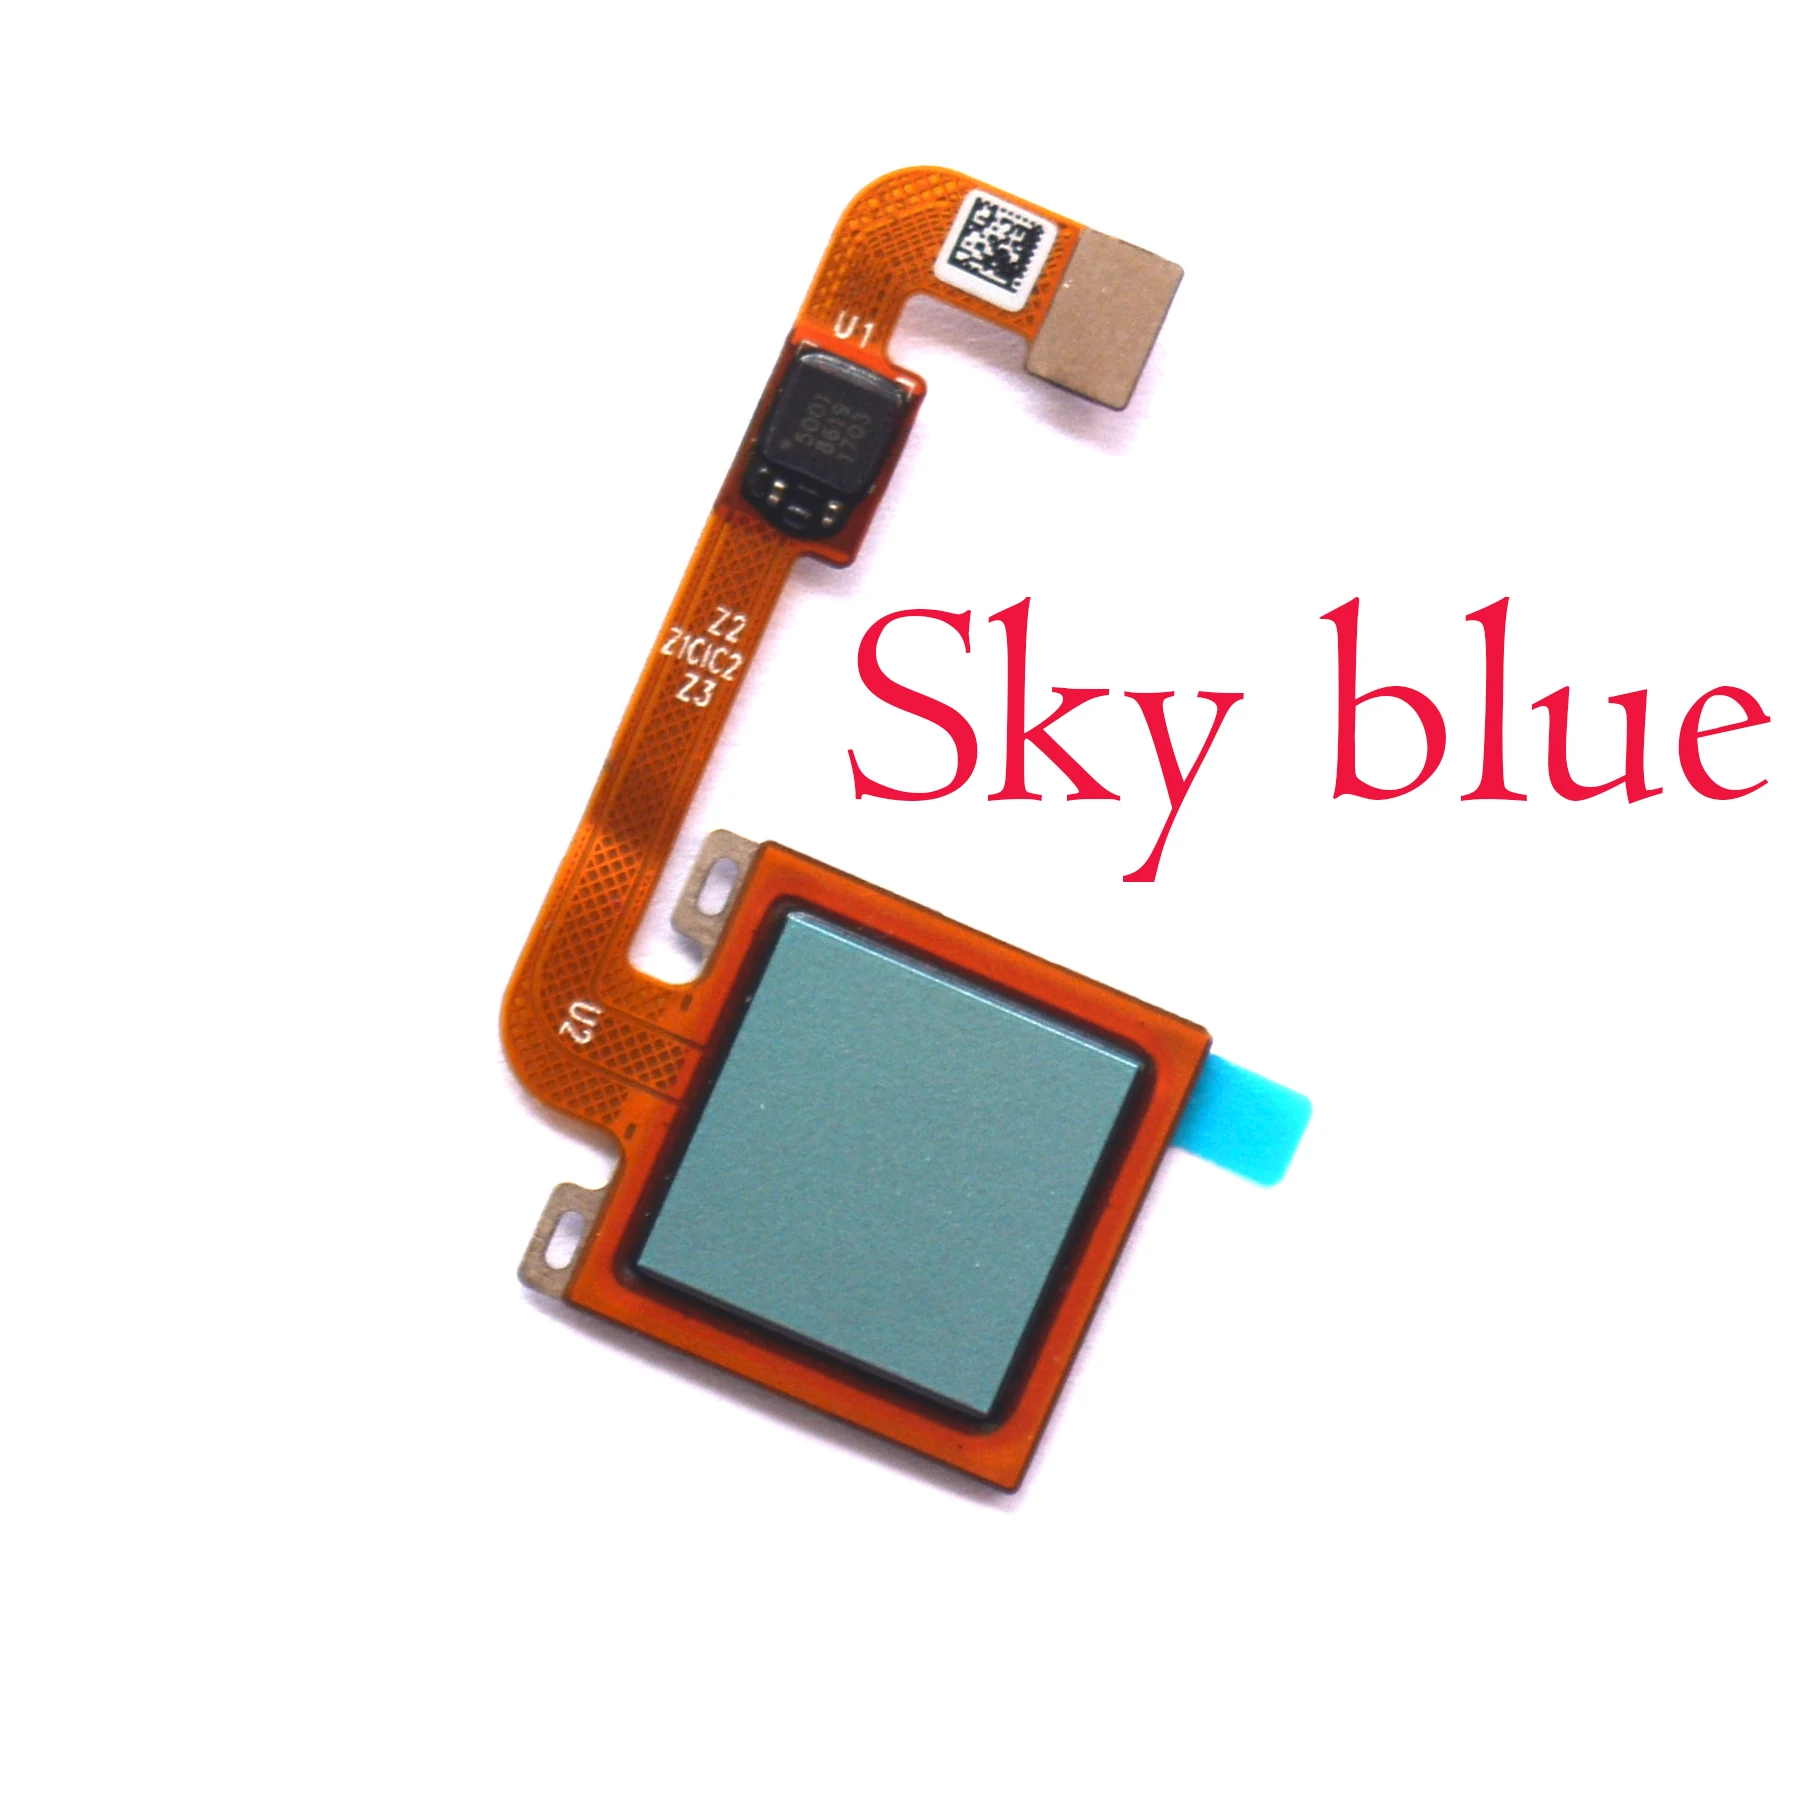 Для Redmi Note4 протестированный fpc Touch ID датчик отпечатков пальцев гибкий кабель для Xiaomi Redmi Note 4X4 - Цвет: global sky blue